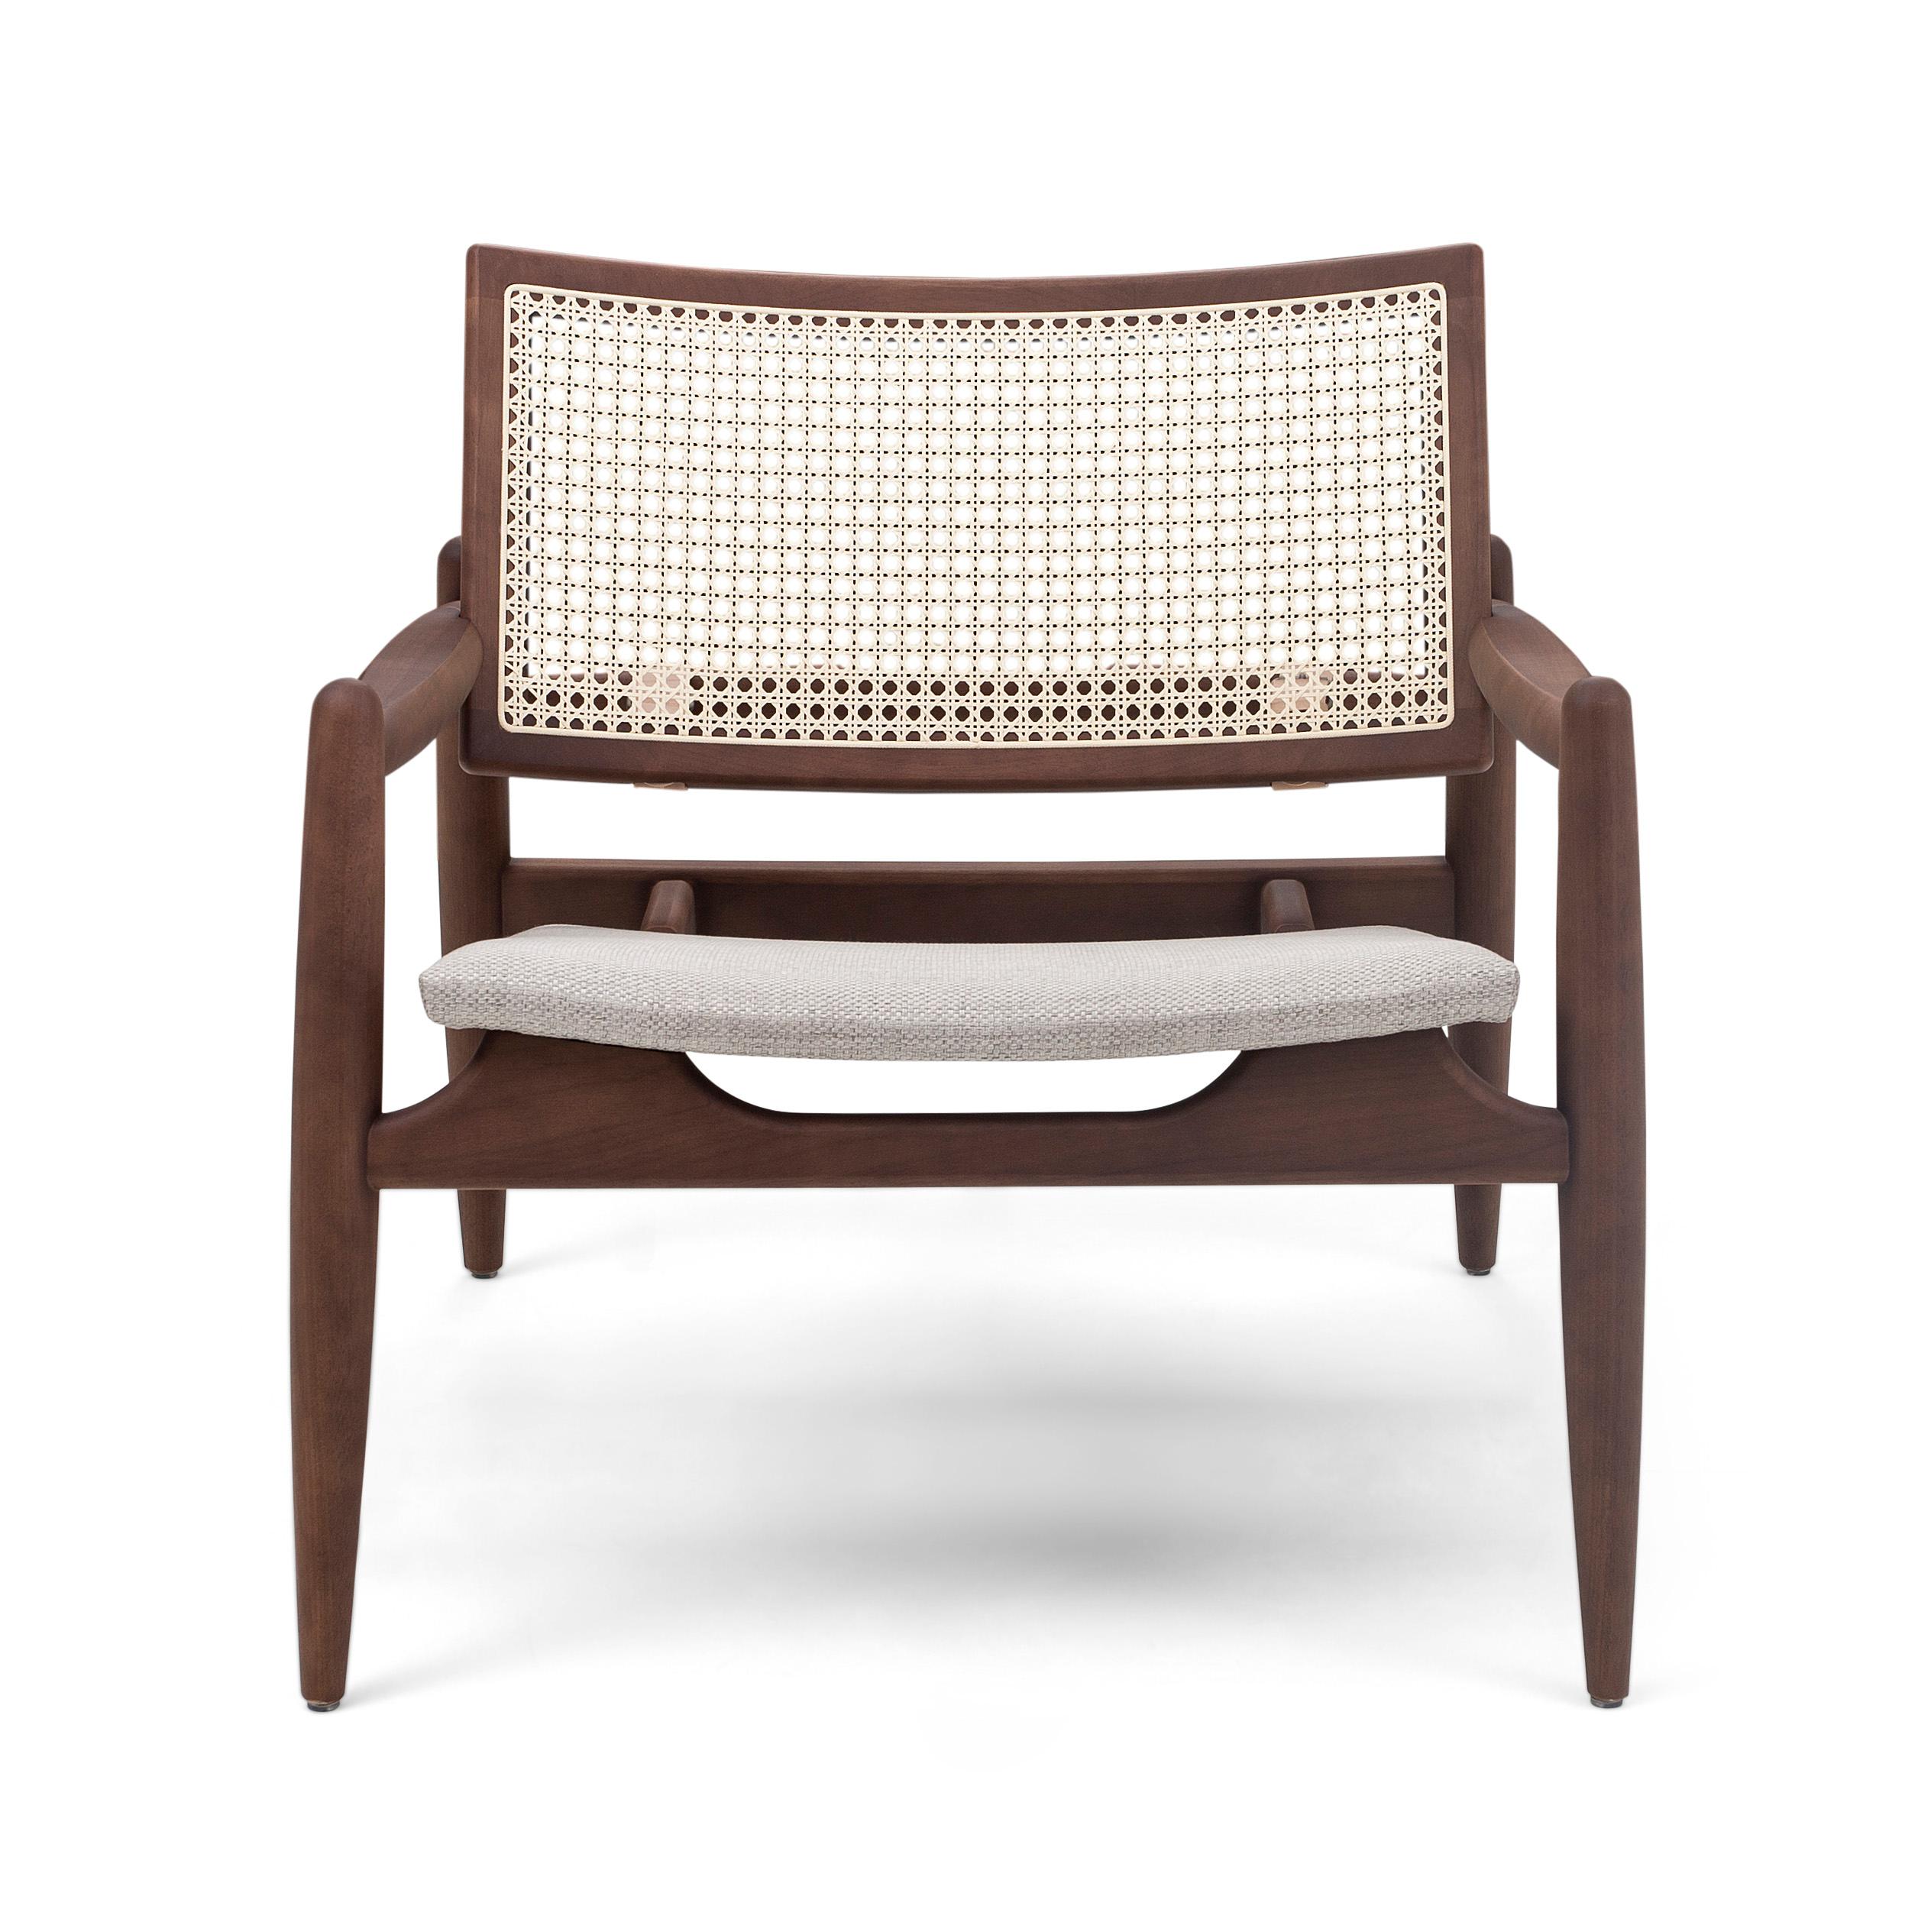 Das Uultis Design Team hat den Soho curved cane mit einer geschwungenen Rückenlehne aus Walnussholz für all diejenigen entworfen, die einen eleganten, aber dennoch vintage Look in ihren Schlafzimmern, Wohnzimmern und Büros suchen. Dieser Stuhl hat